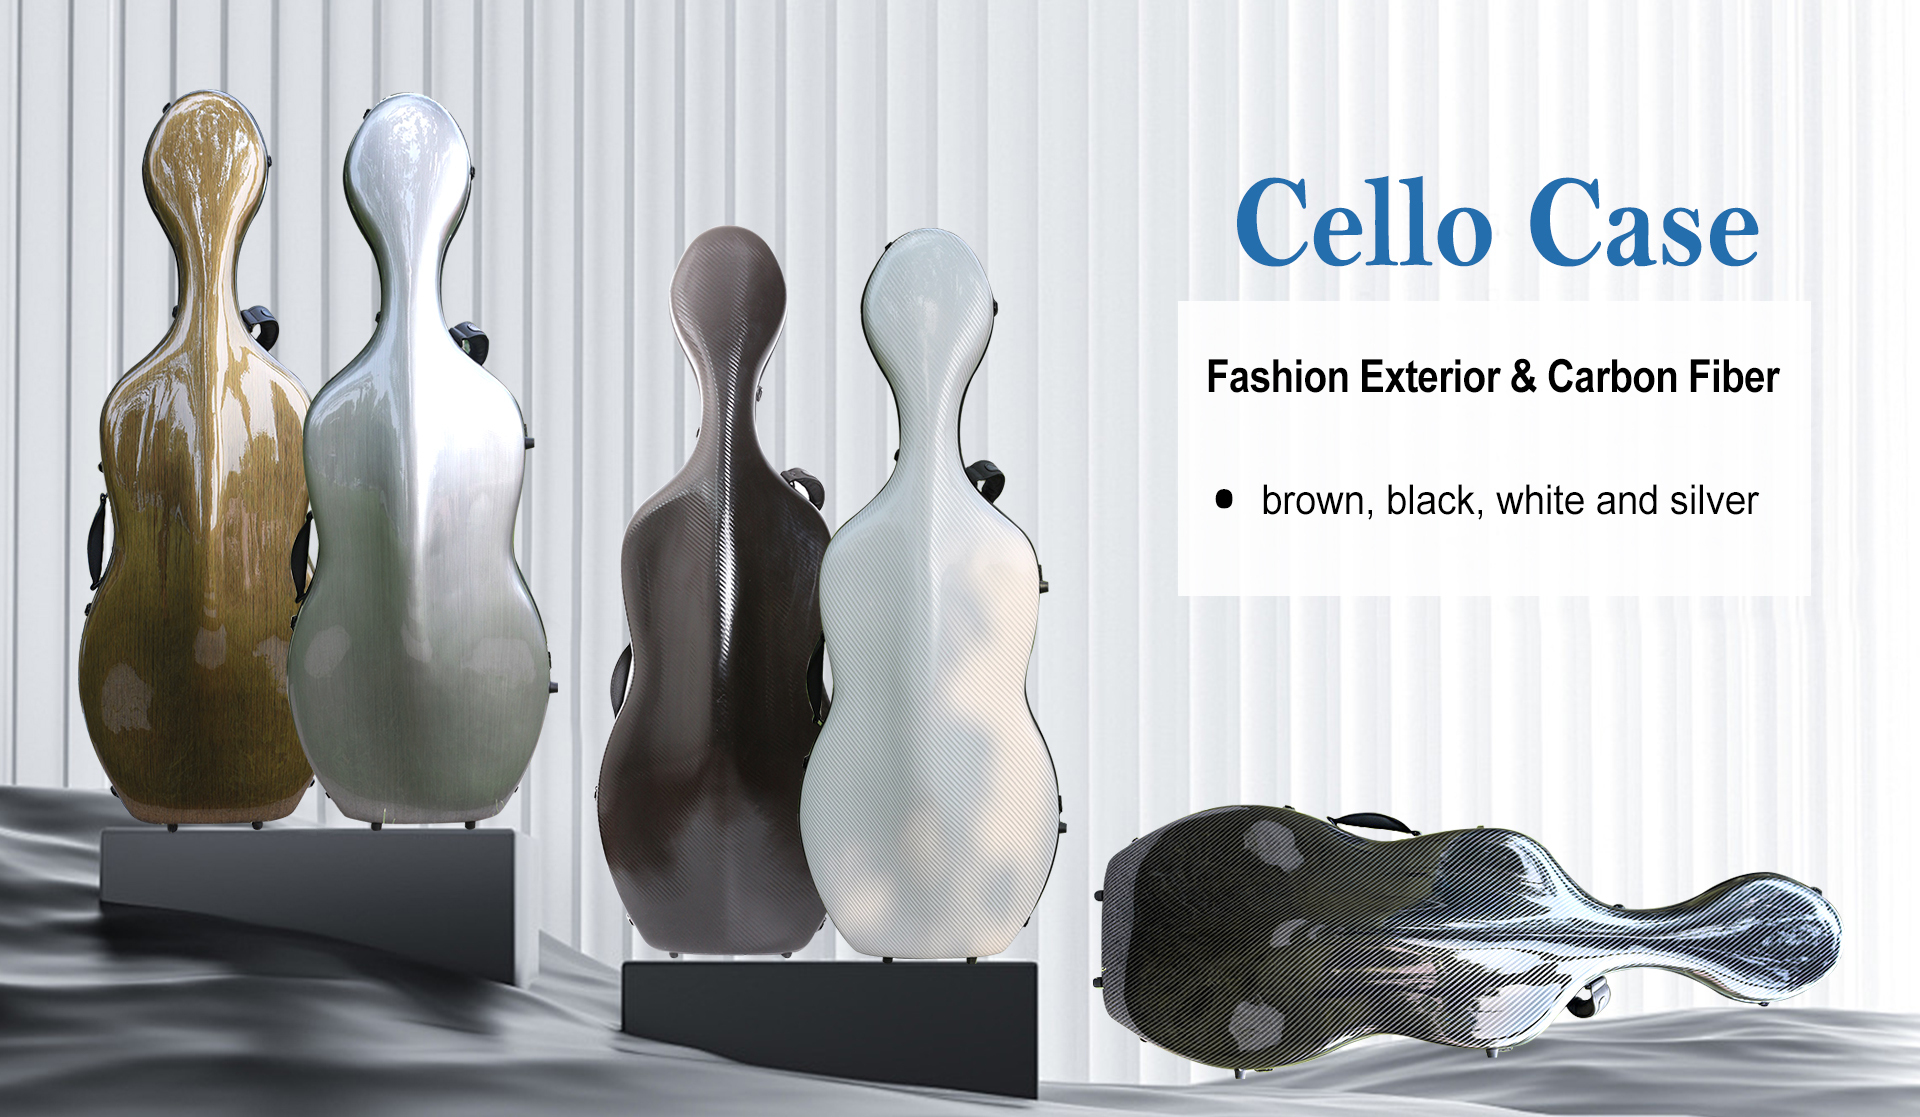 Full Size Cello Case Carbon Fiber Cello Box Silver color Strong Light Strap Wheels Yinfente Cello Cases 3.7kg